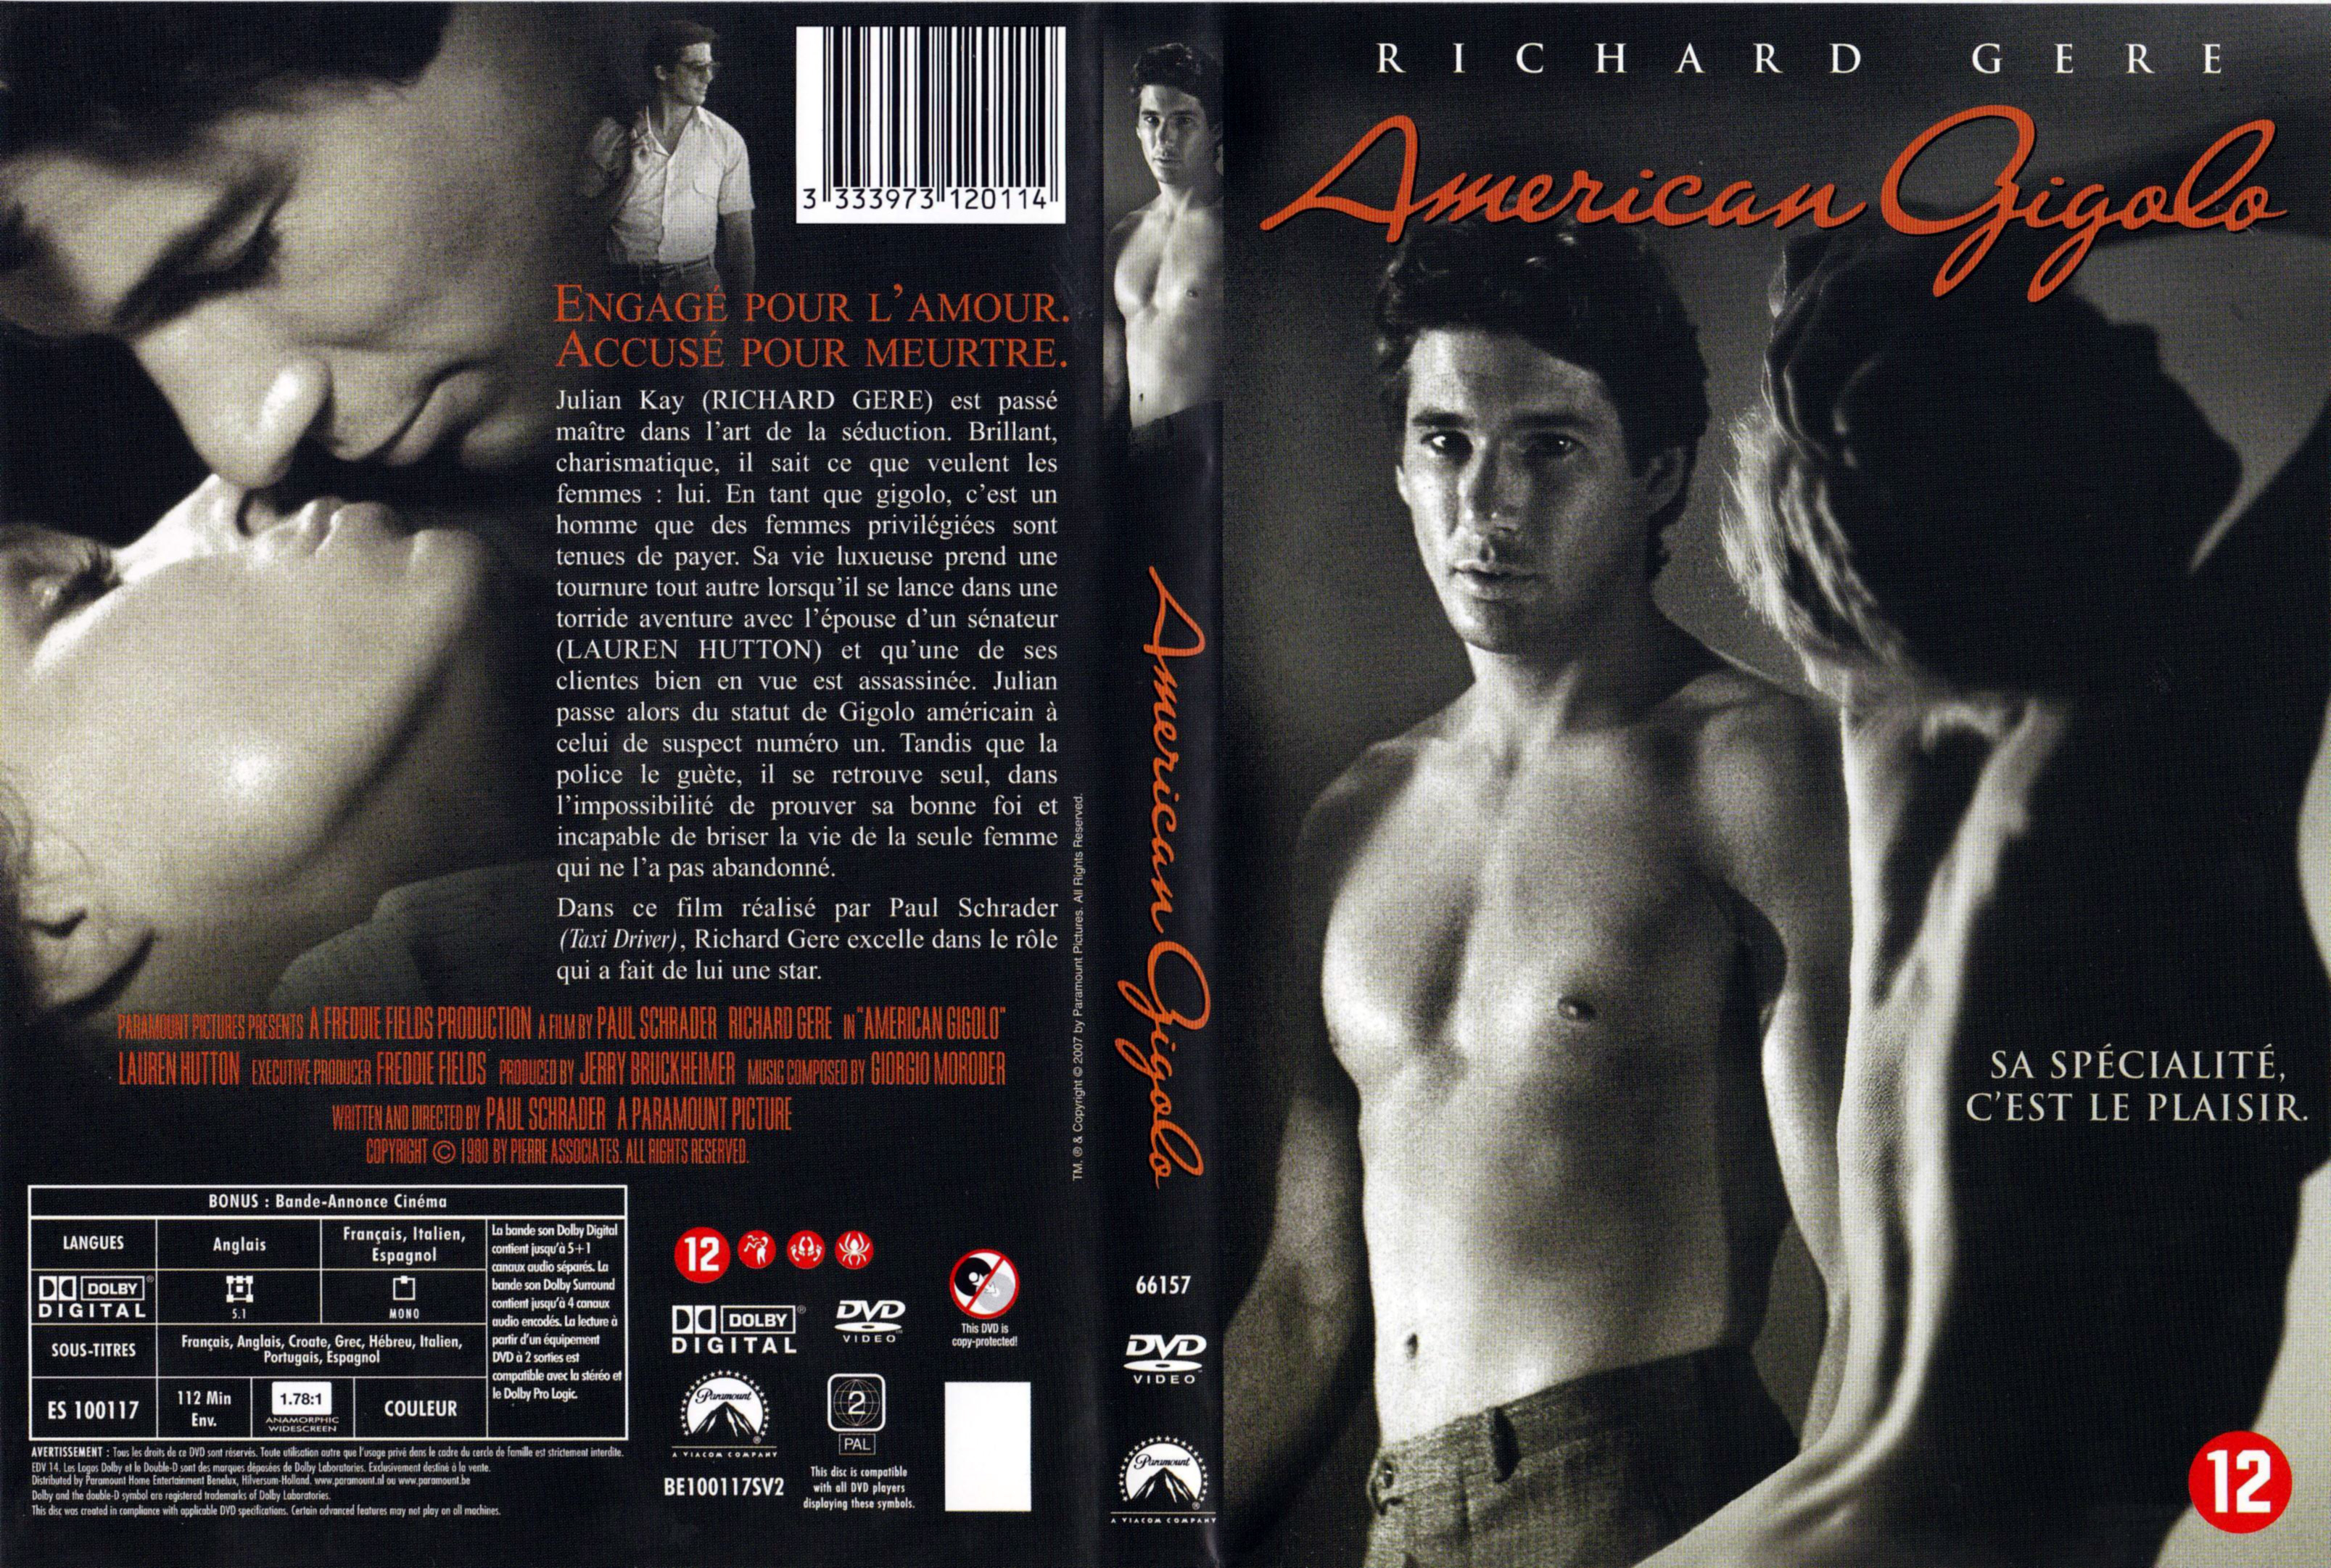 Jaquette DVD American Gigolo v2